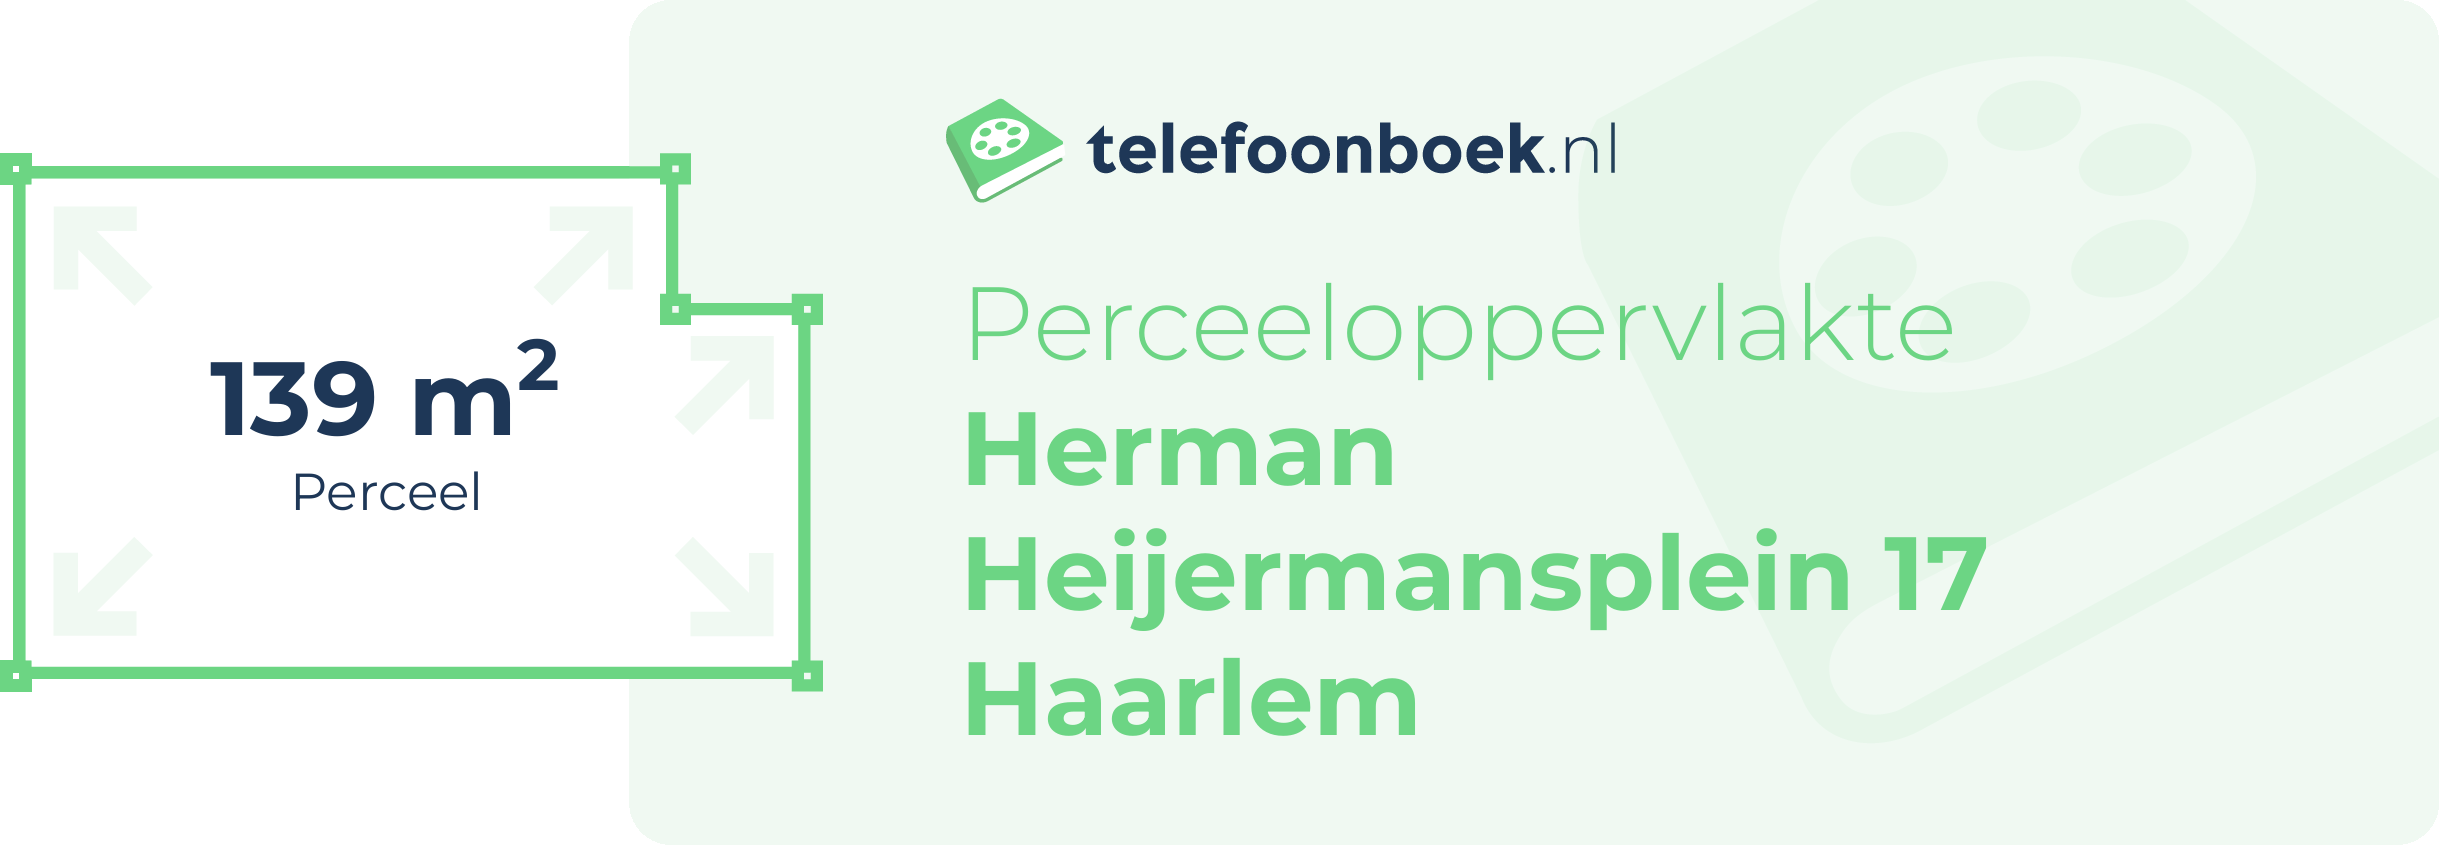 Perceeloppervlakte Herman Heijermansplein 17 Haarlem